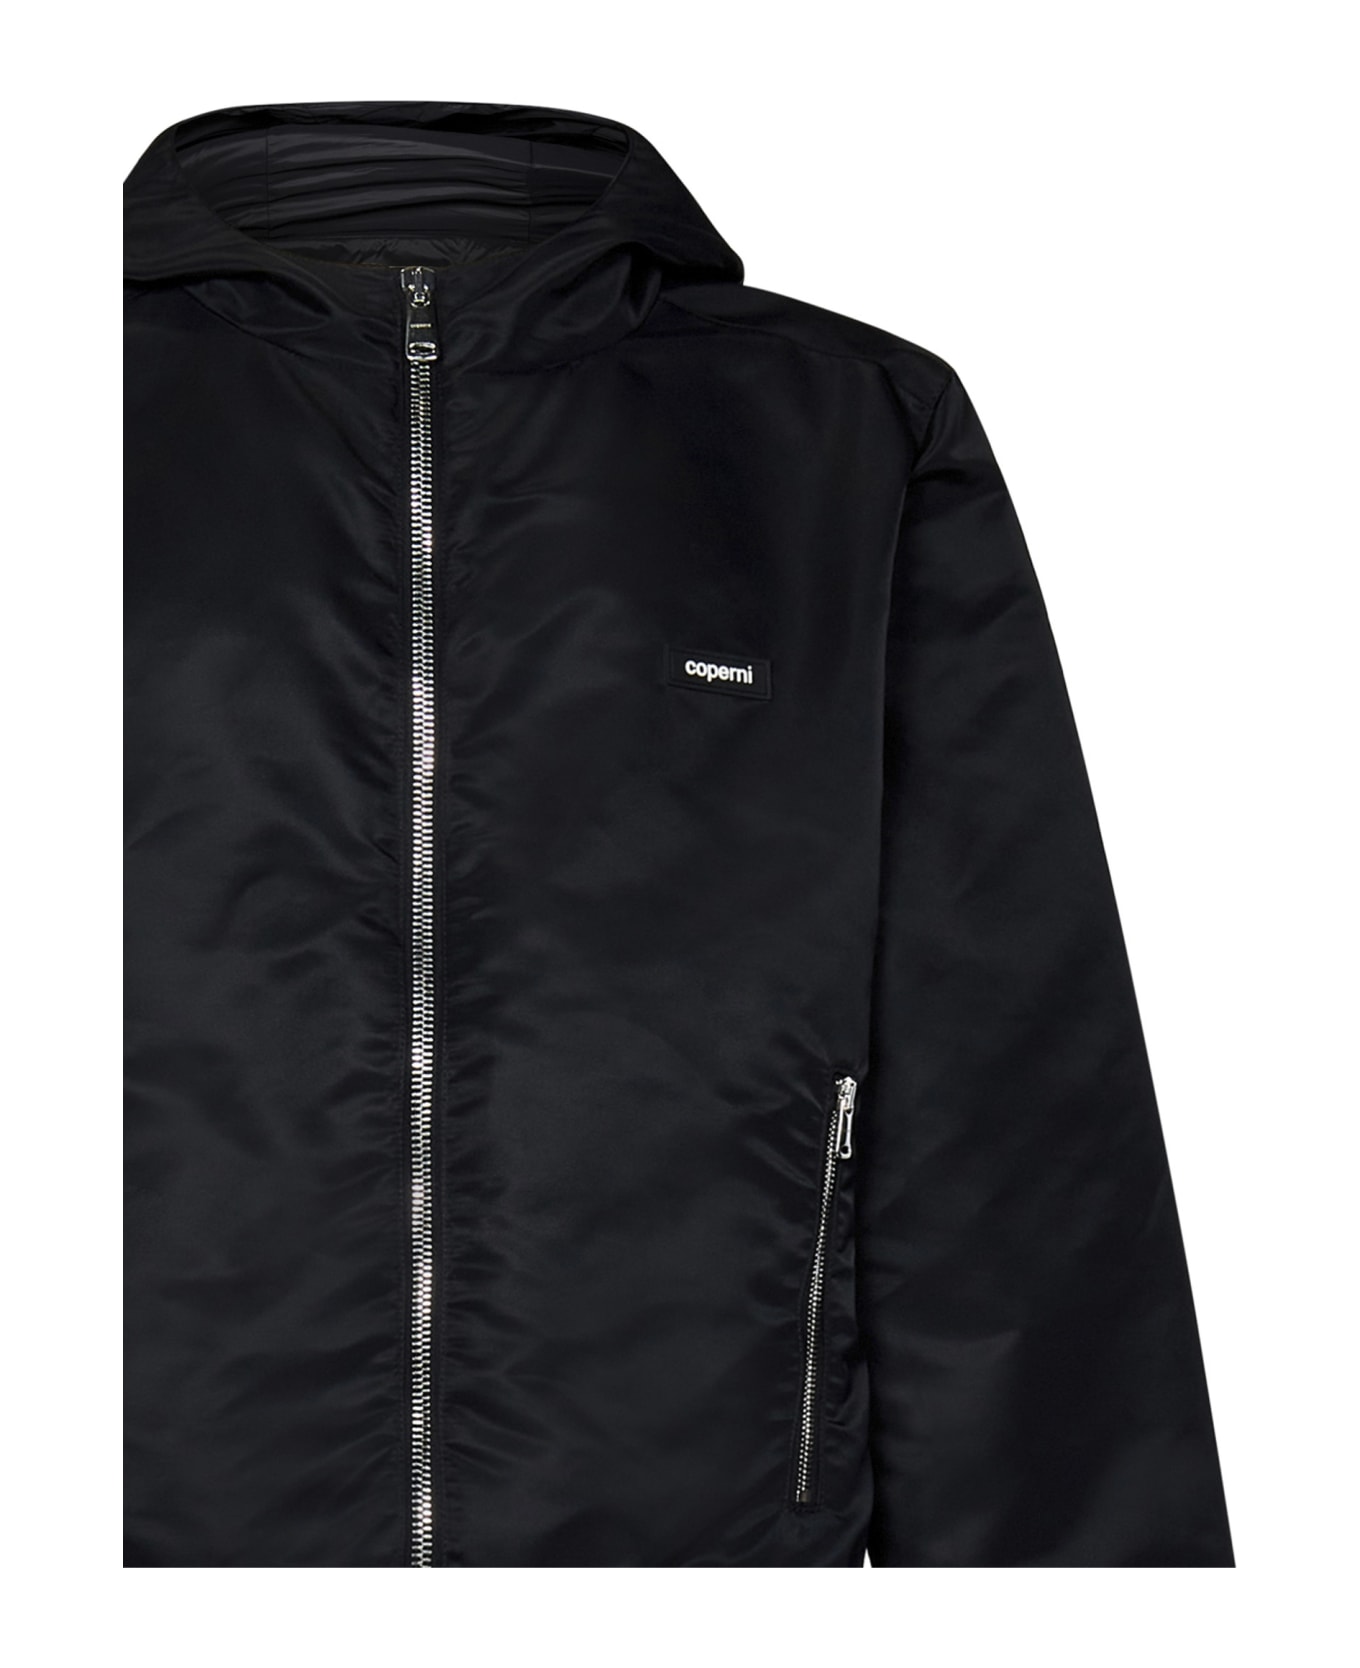 Coperni Jacket - BLACK ジャケット